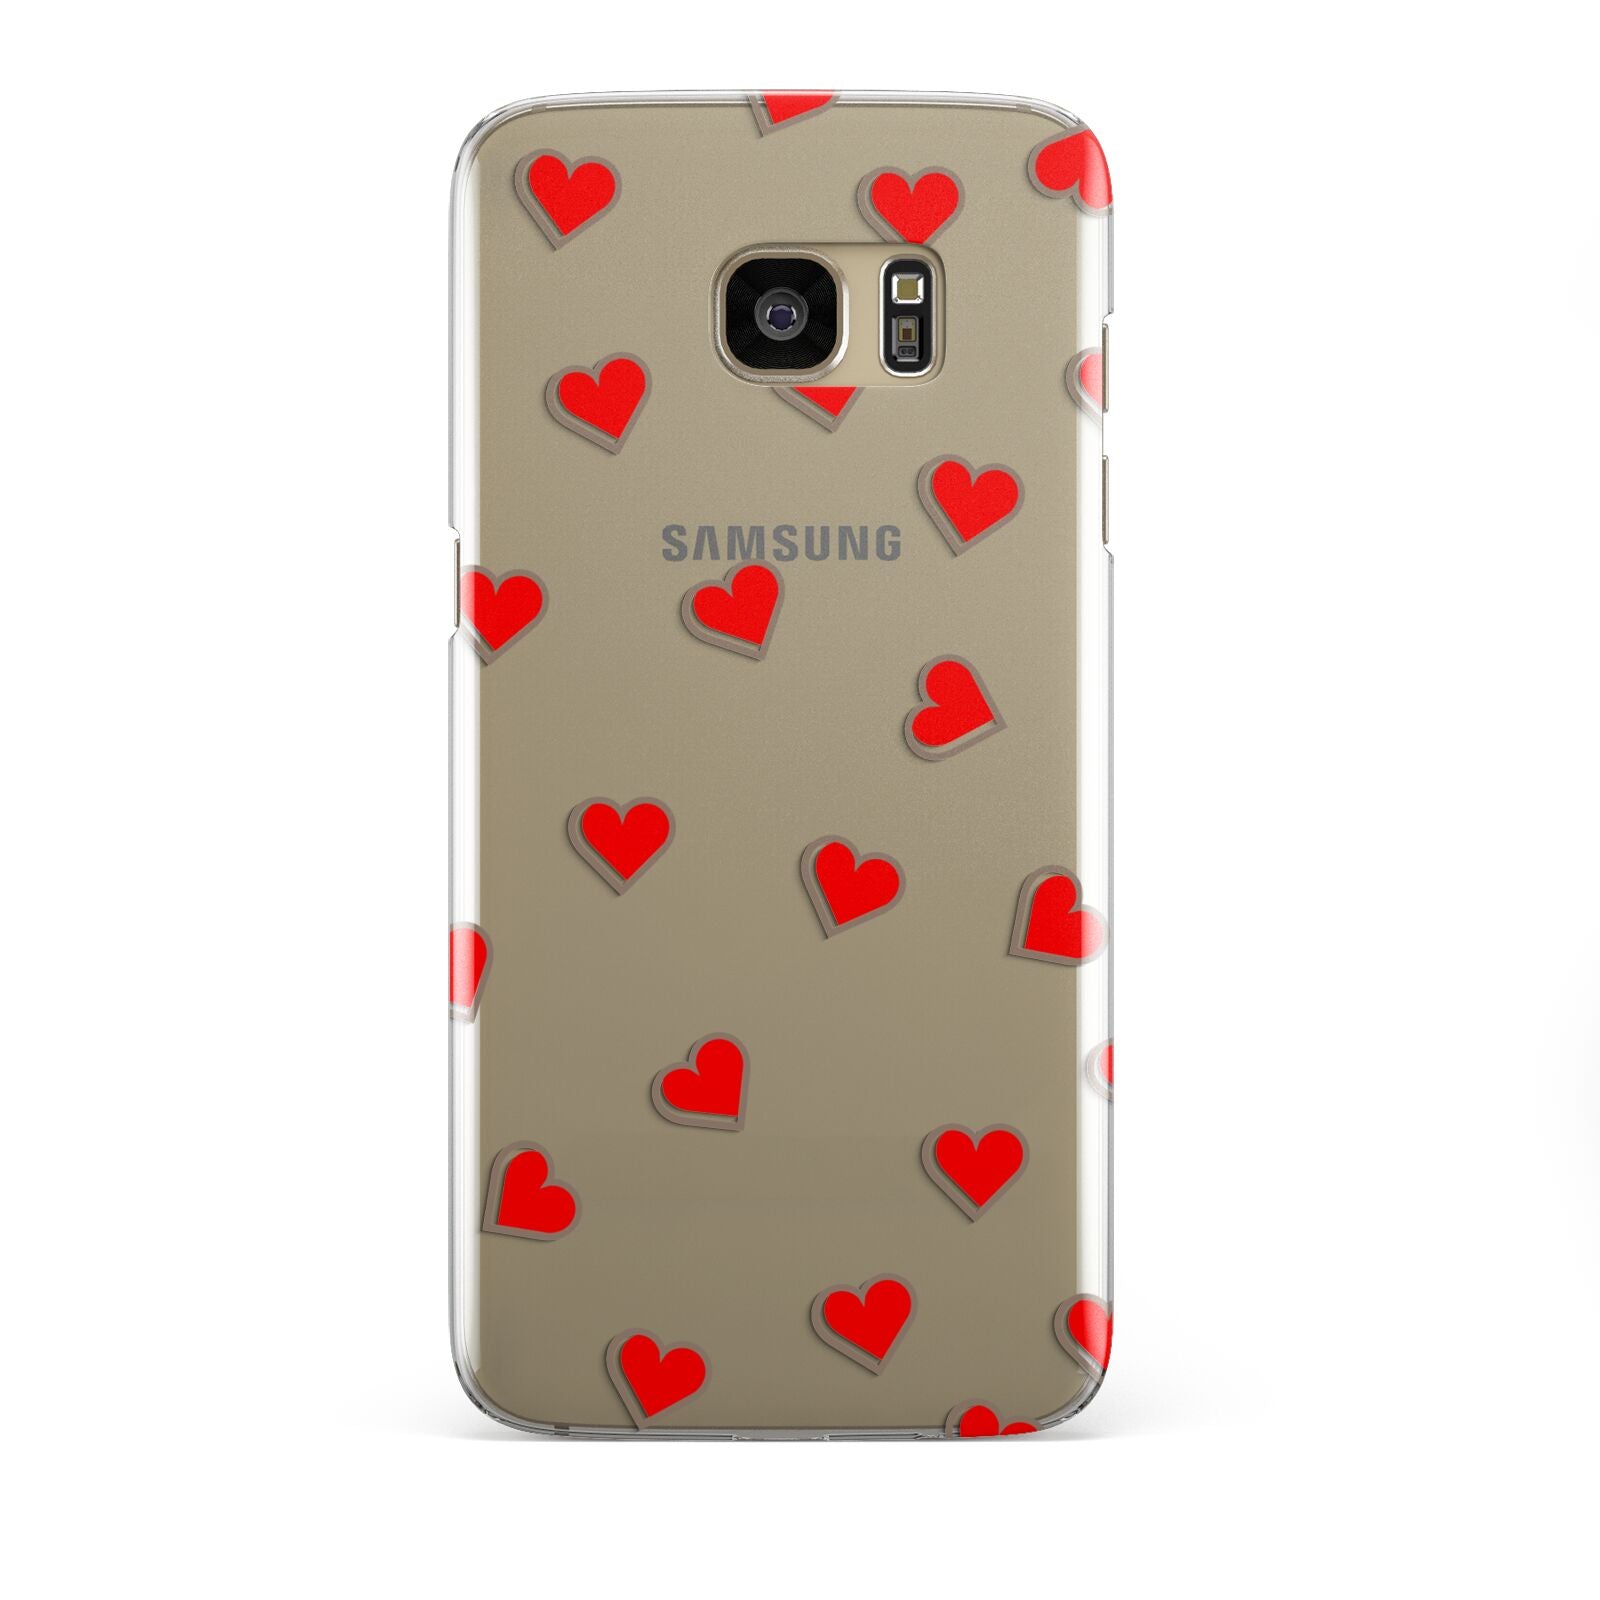 Cute Red Hearts Samsung Galaxy S7 Edge Case